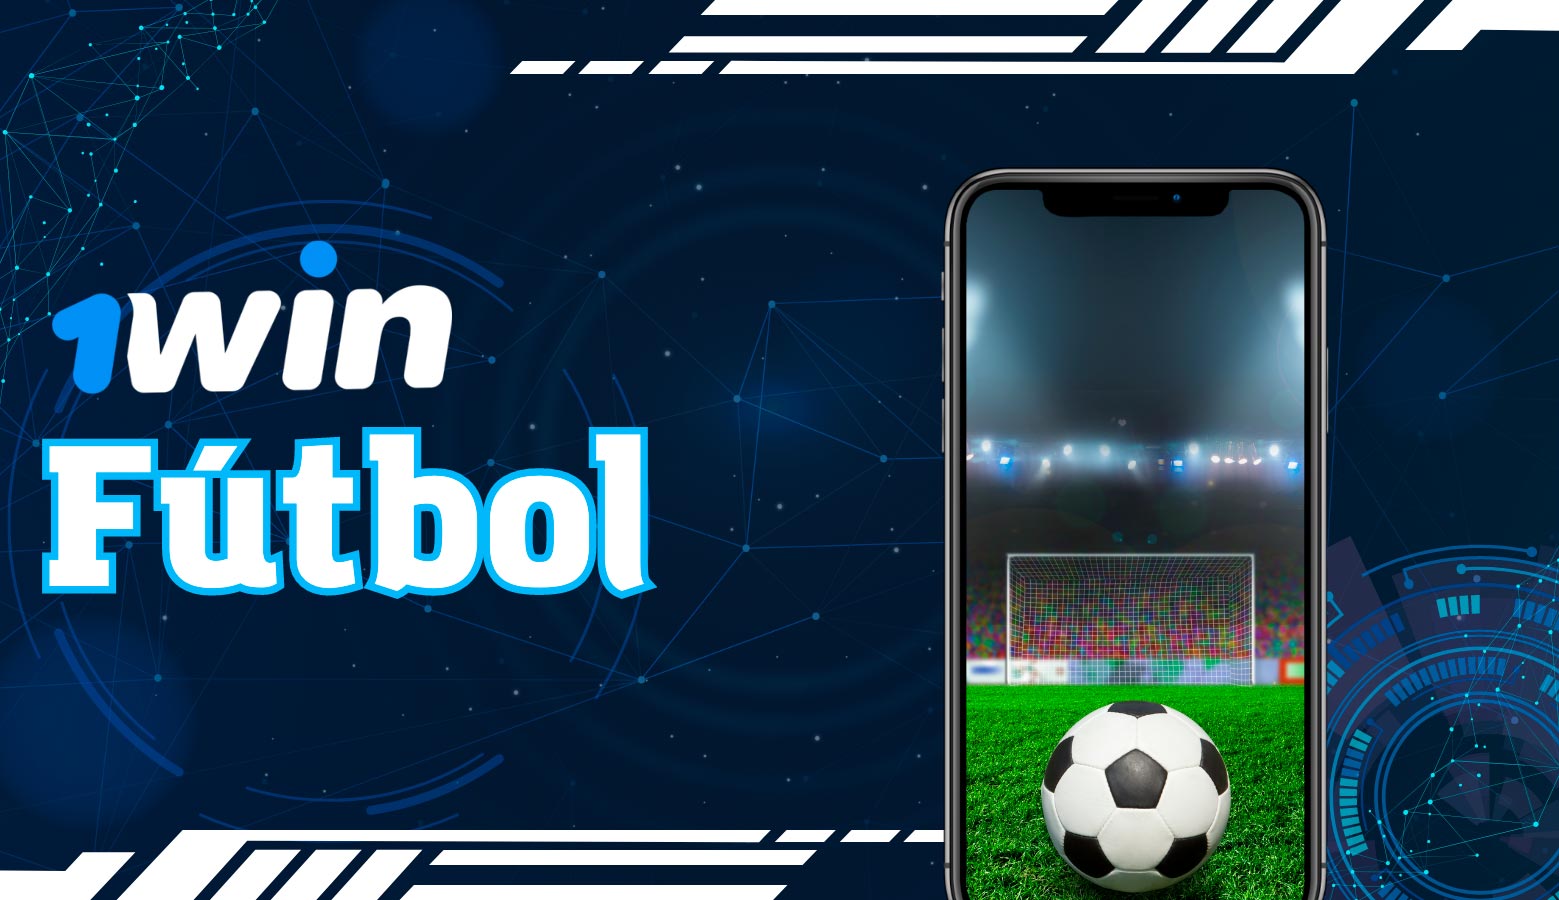 Las apuestas de fútbol están disponibles en la aplicación 1win